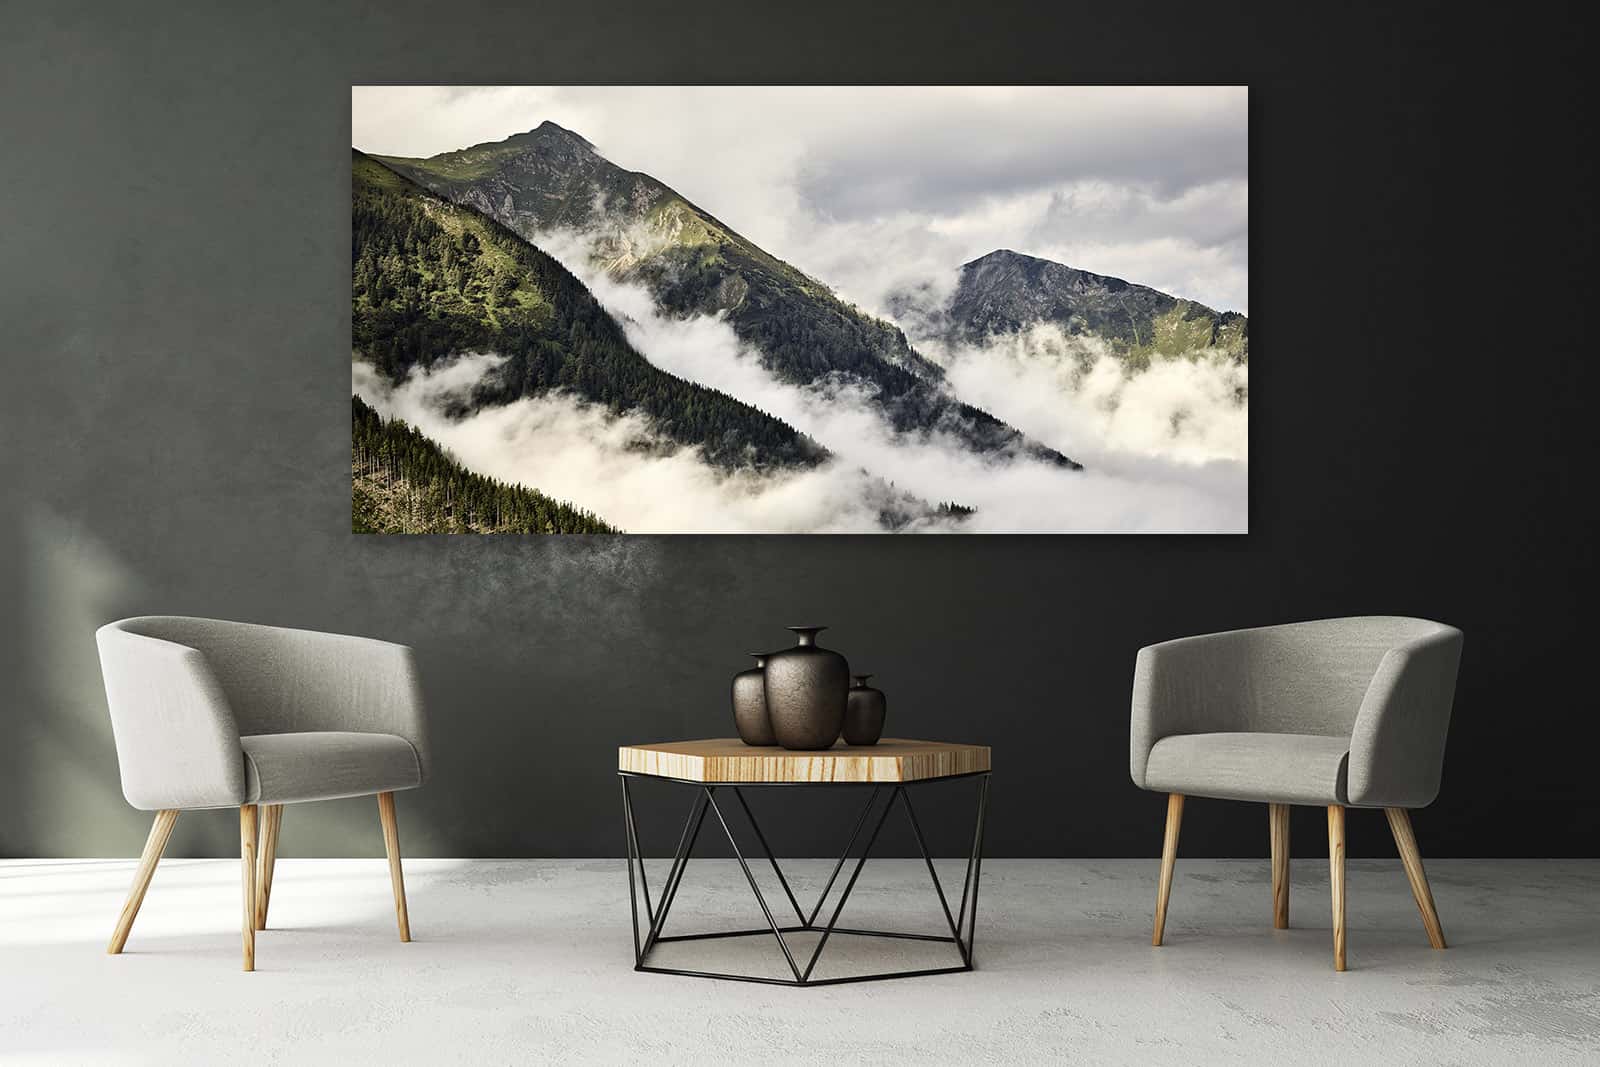 Der ChromaLuxe Print namens Misty Mountains kommt über einer modernen Sitzgelegenheit optimal zur Geltung.